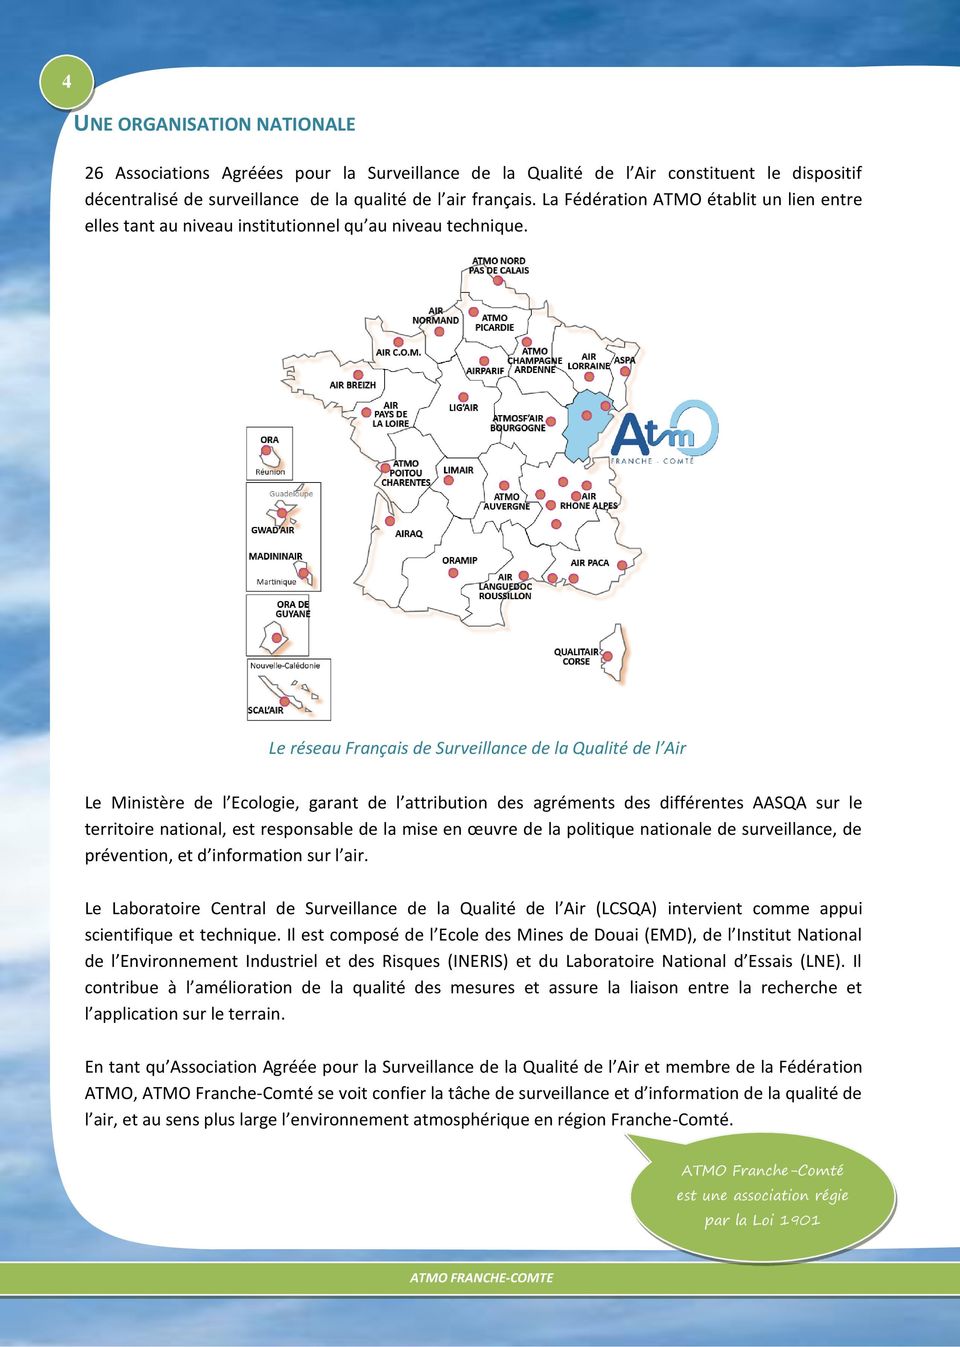 Le réseau Français de Surveillance de la Qualité de l Air Le Ministère de l Ecologie, garant de l attribution des agréments des différentes AASQA sur le territoire national, est responsable de la